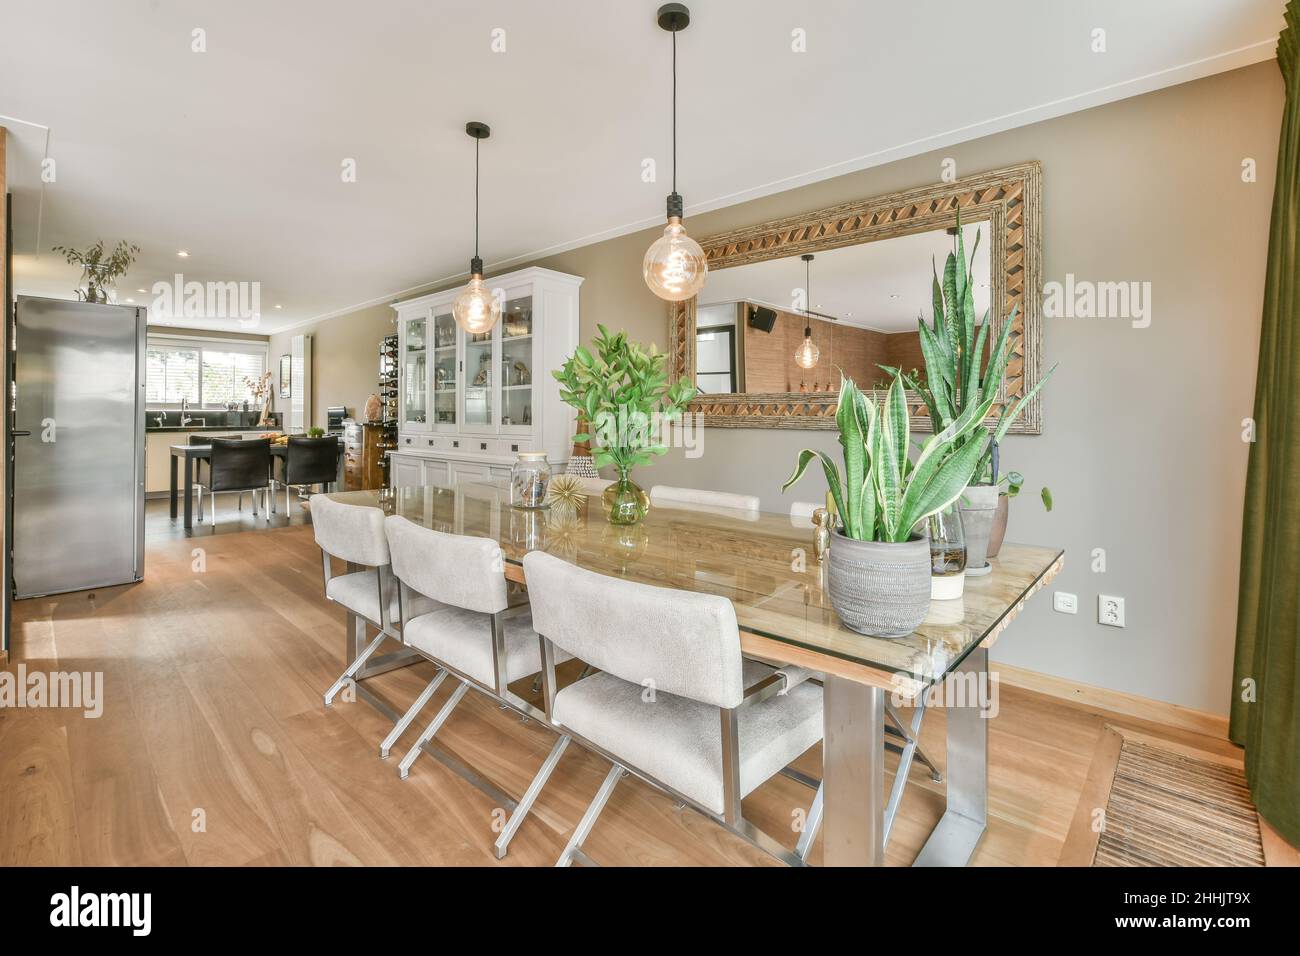 Großer Esstisch mit beigefarbenen Stühlen in einem geräumigen Zimmer, das mit einem Spiegel an der Wand und kreativen Lampen in der Nähe der Küche in einer geräumigen Villa ausgestattet ist Stockfoto